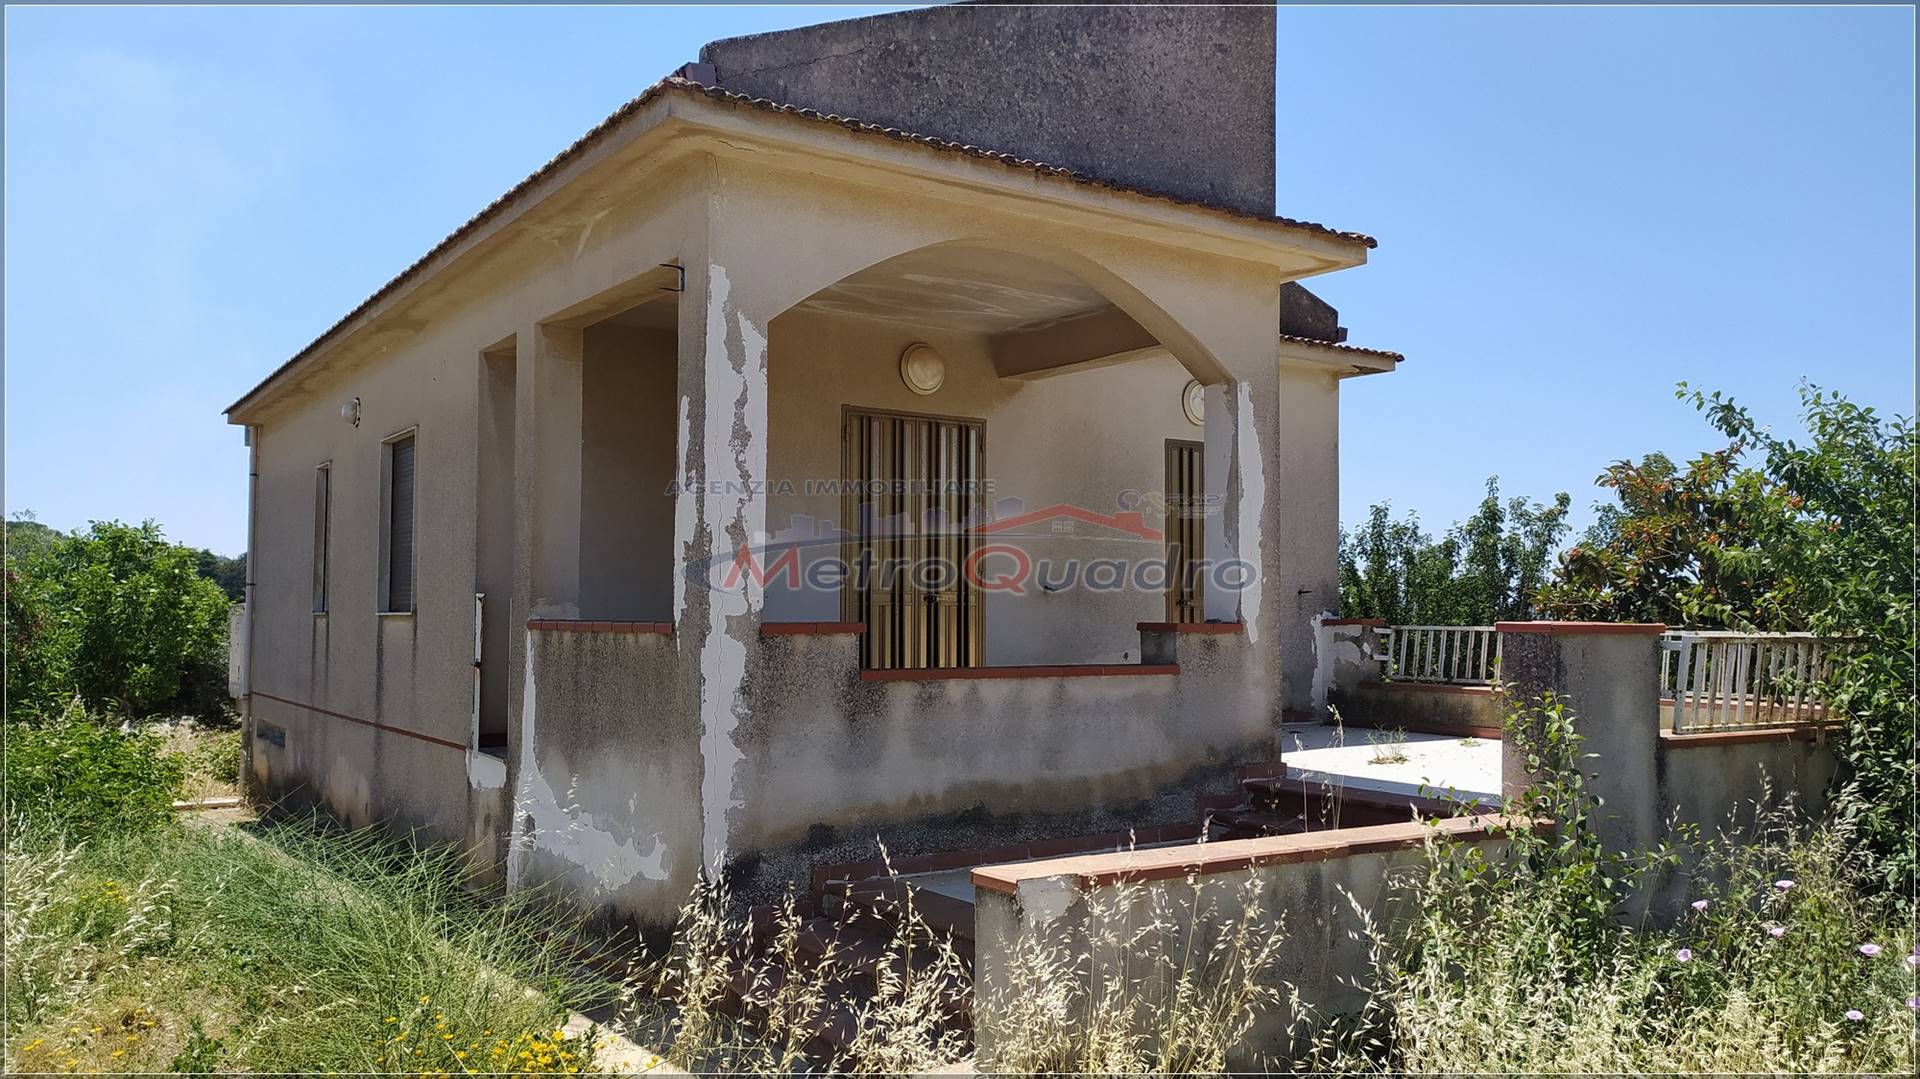 Villa in vendita a Canicattì, 3 locali, zona Località: C.DA MONTAGNA - S. MARTA, prezzo € 95.000 | CambioCasa.it